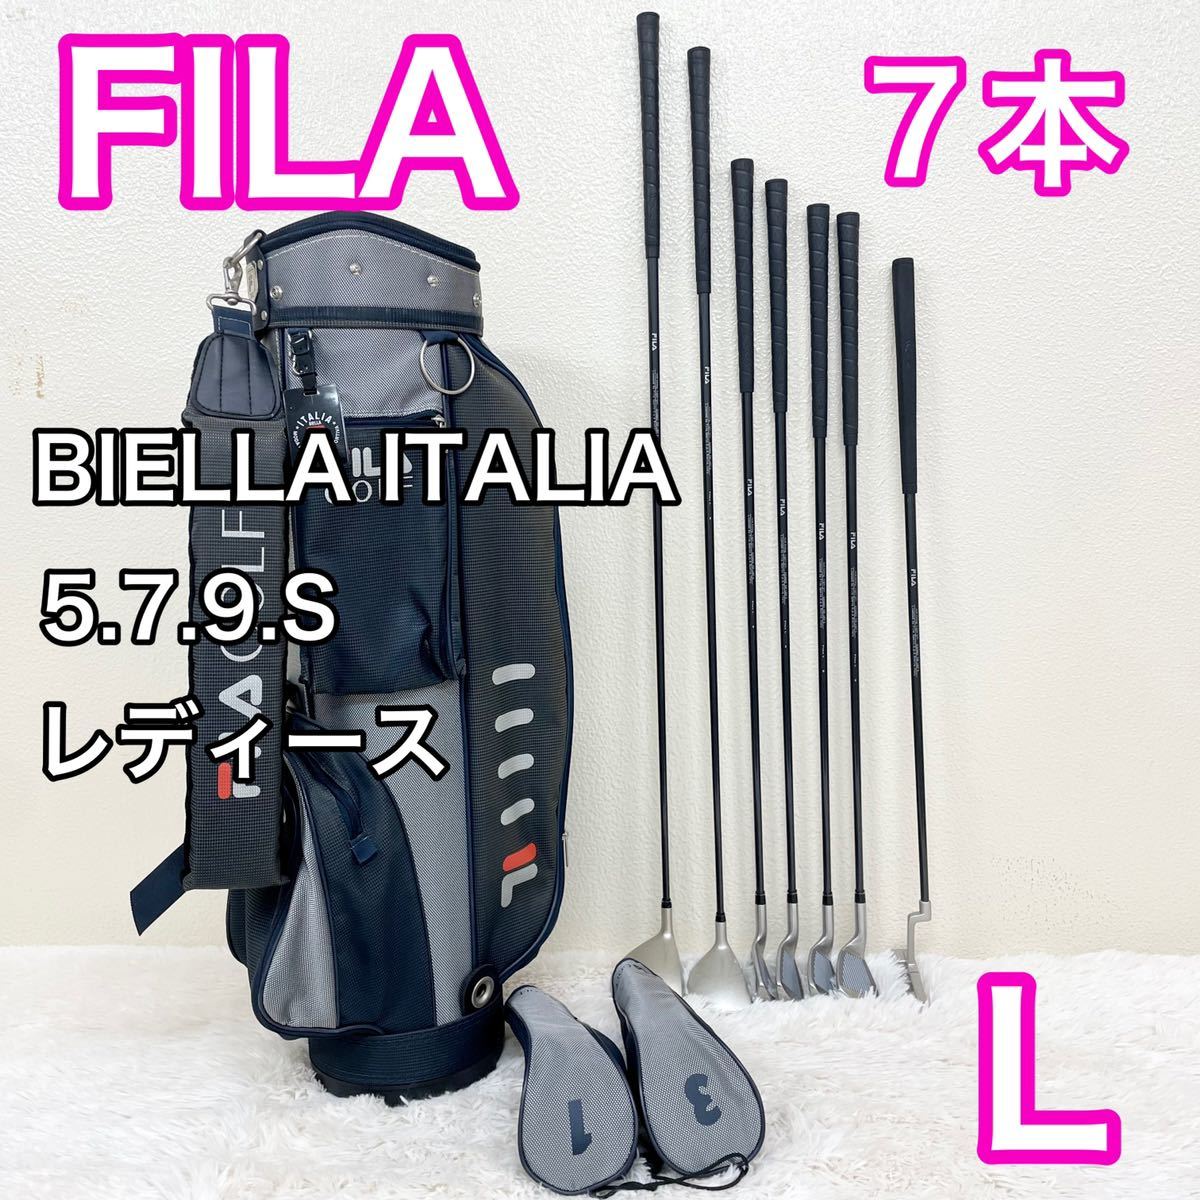 中古美品 FILA フィラ BIELLA ITALIA セット ゴルフセット レディース